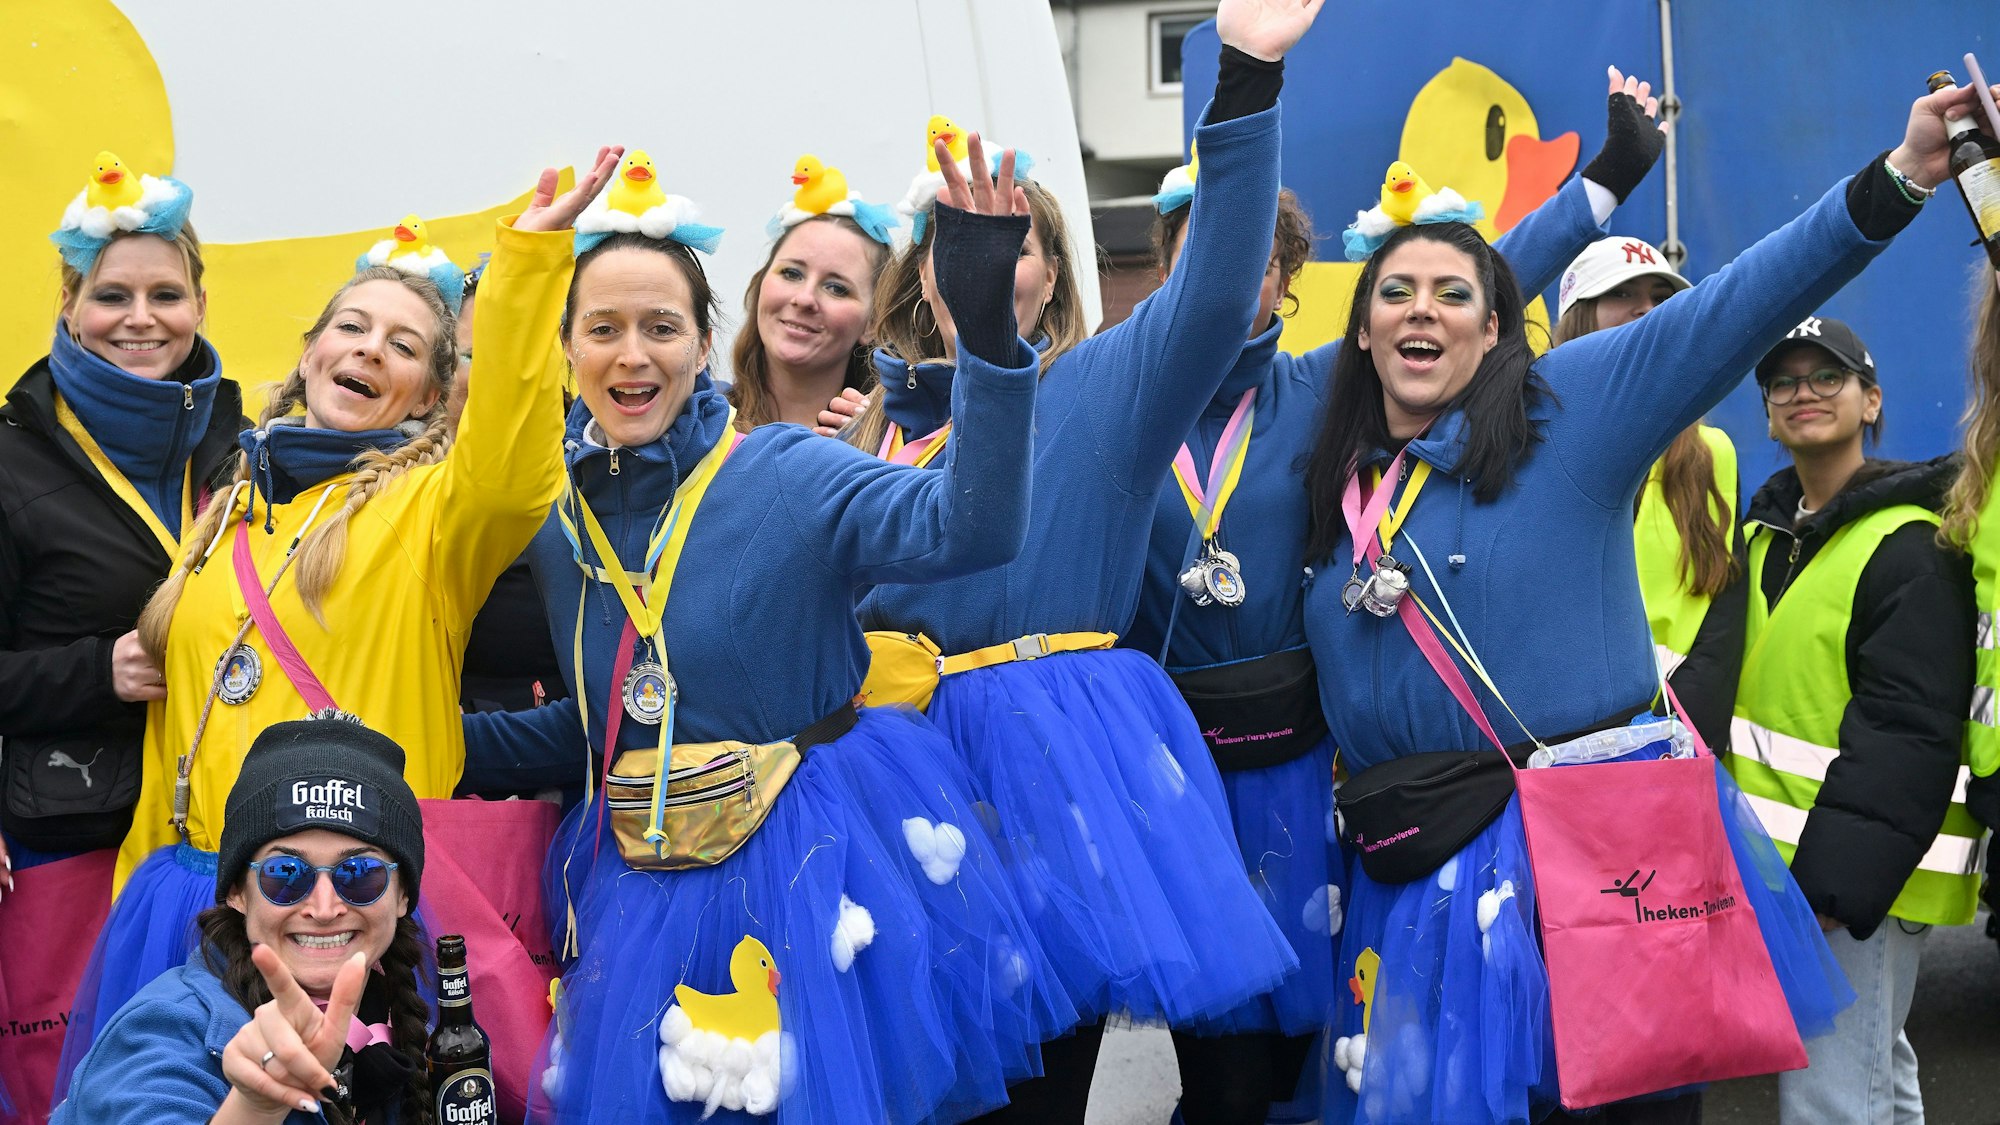 Jubelnde Frauen in blauen und gelben Kostümen.